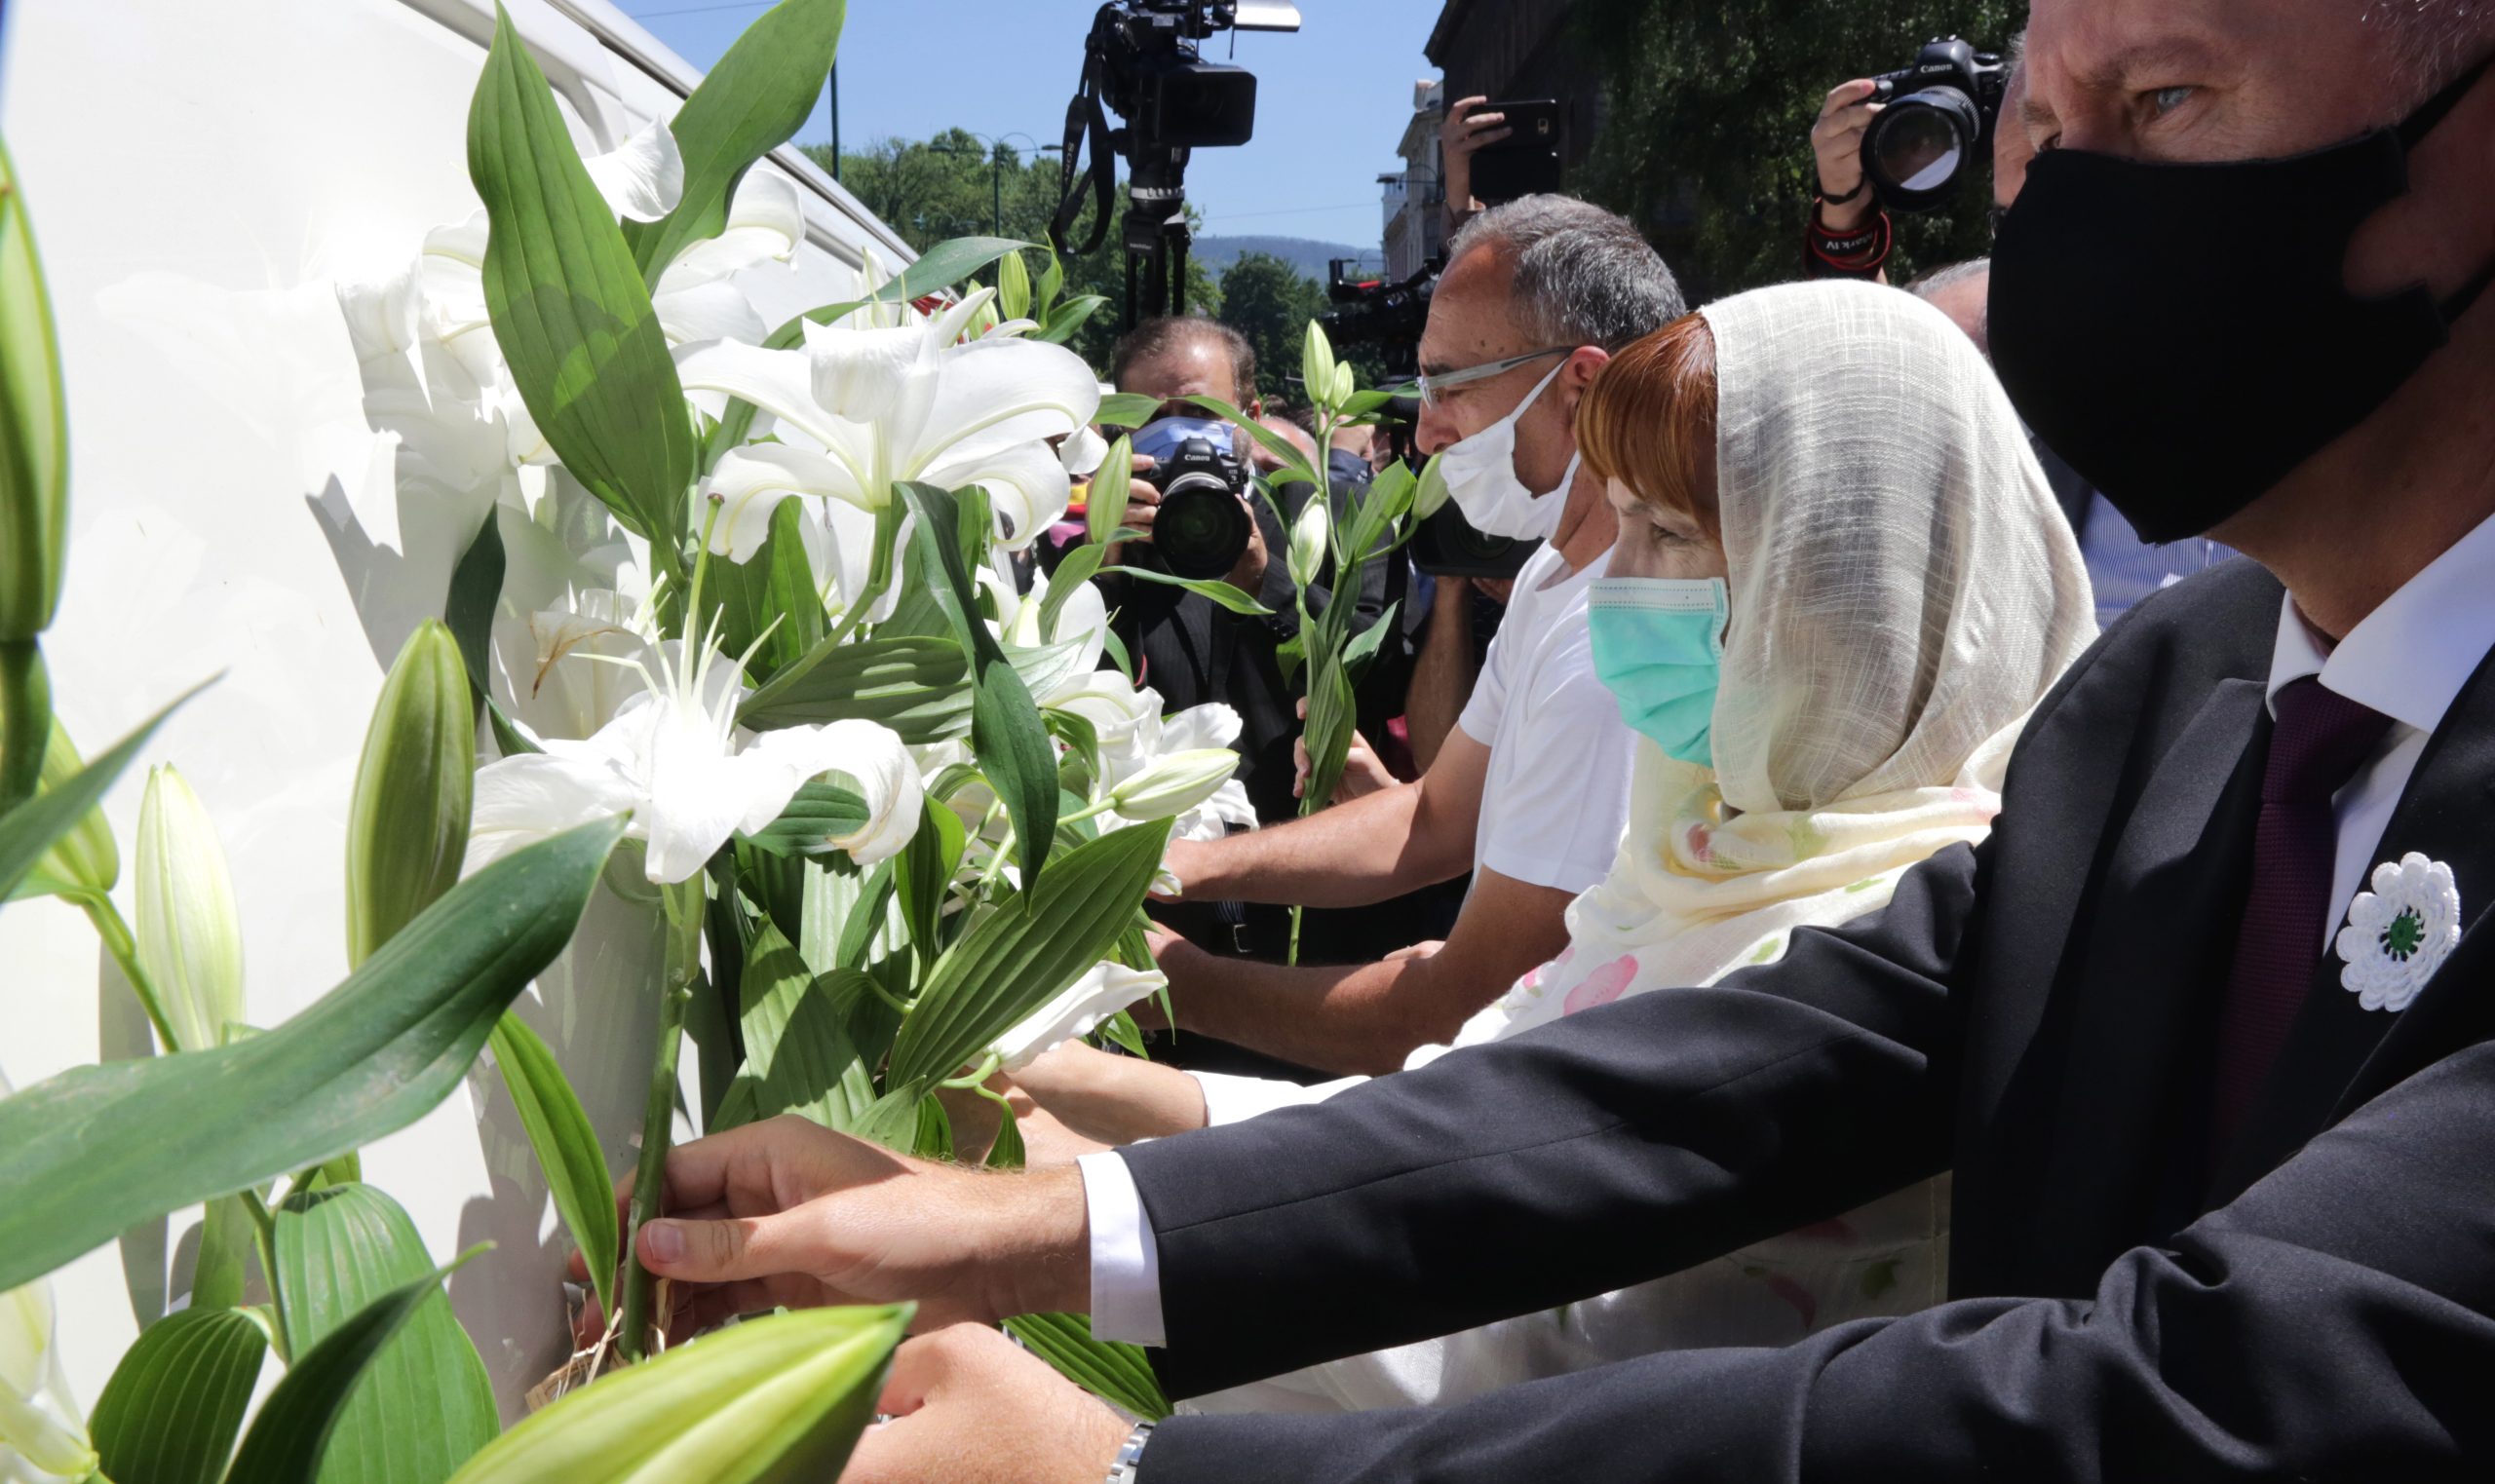 Sahranom devet srebreničkih žrtava završeno obeležavanje 25. godišnjice genocida u Srebrenici 1